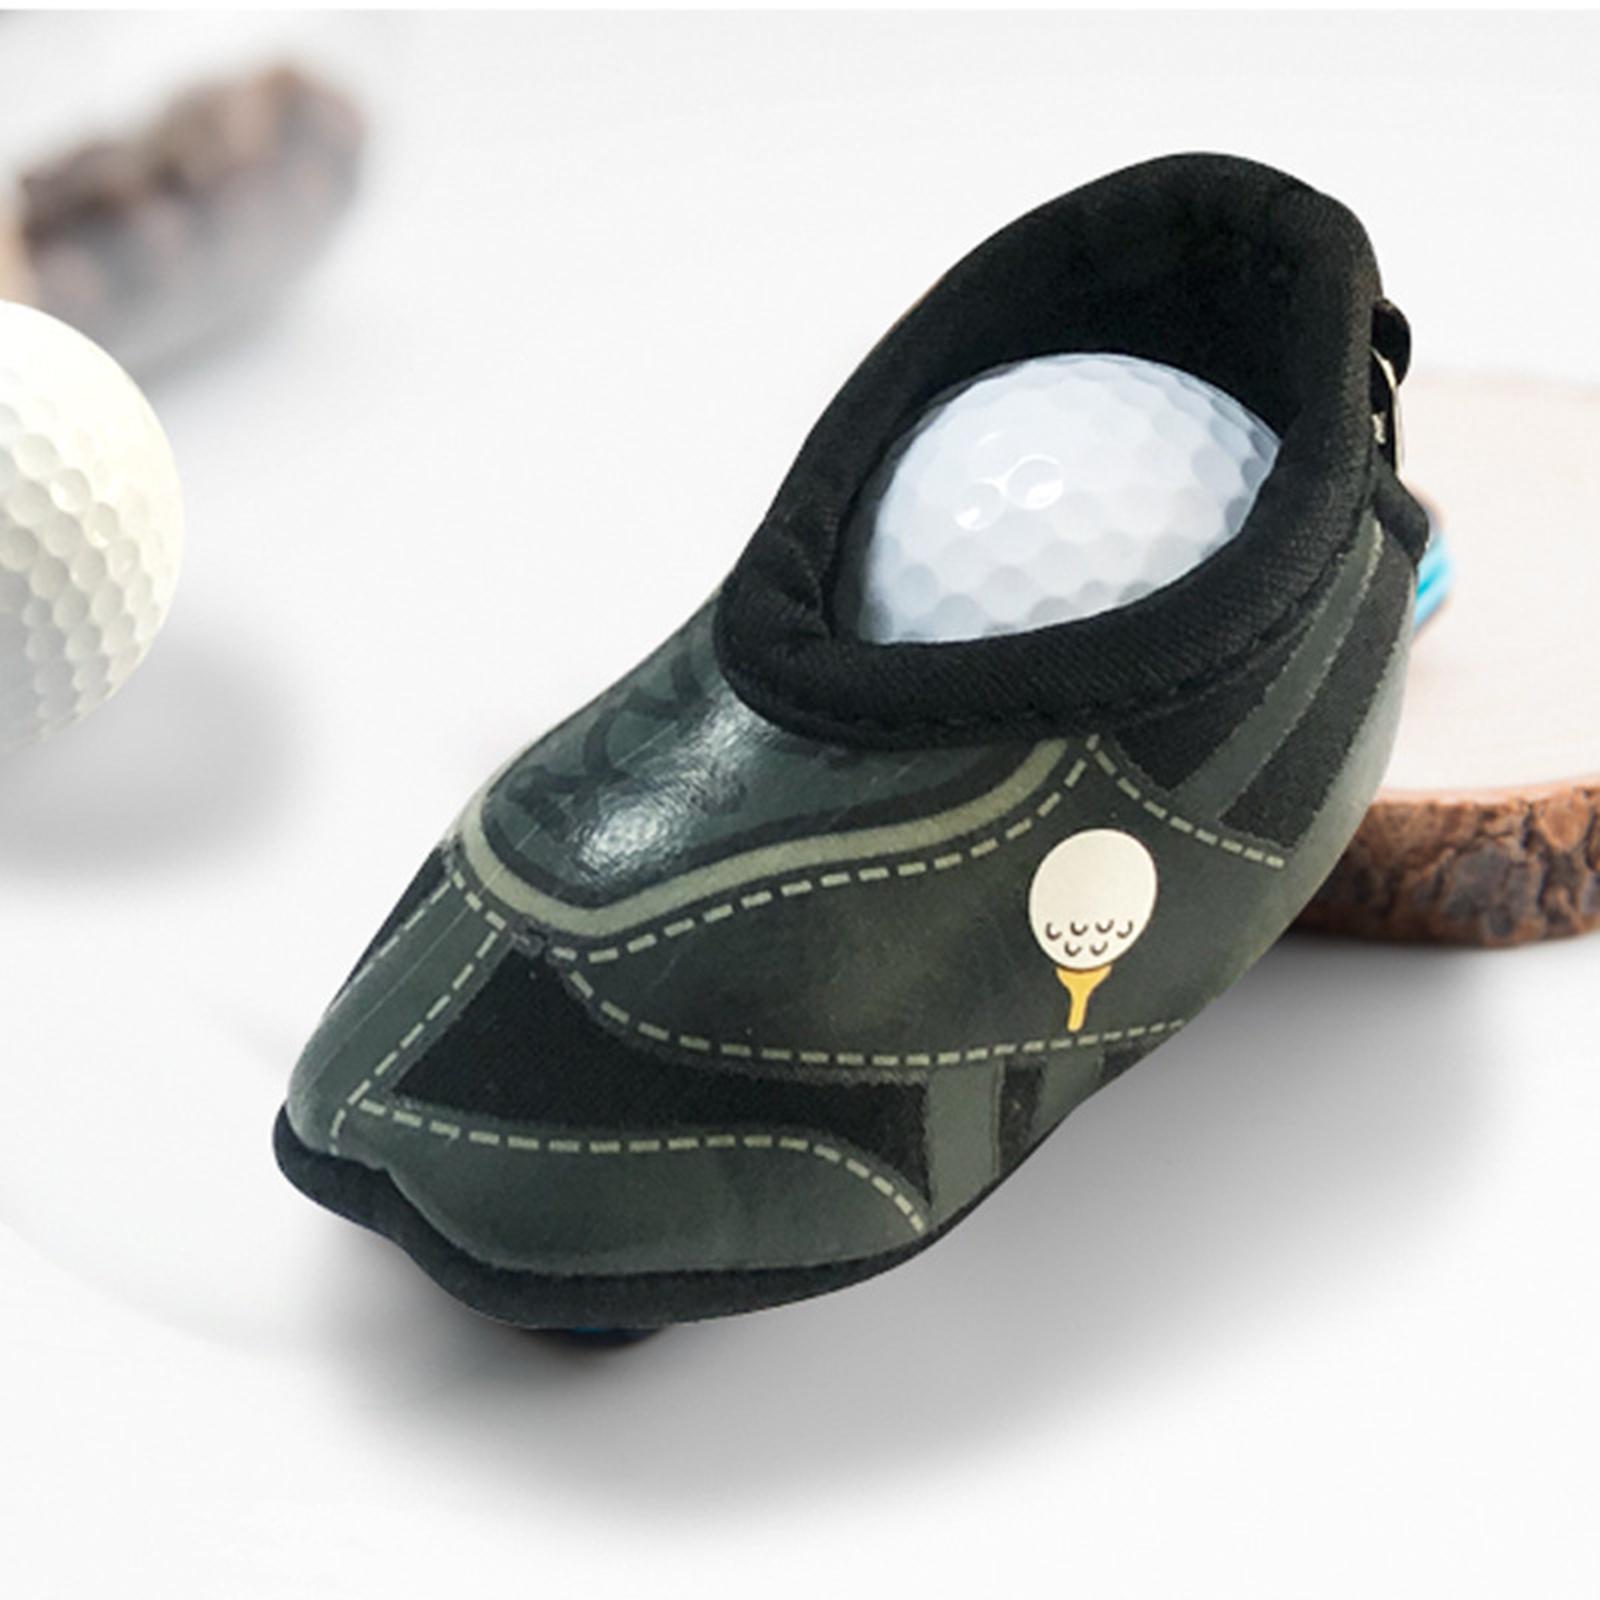 Neoprene Golf Ball Carry Bag Small Lightweight Golf Accessories Holder Green